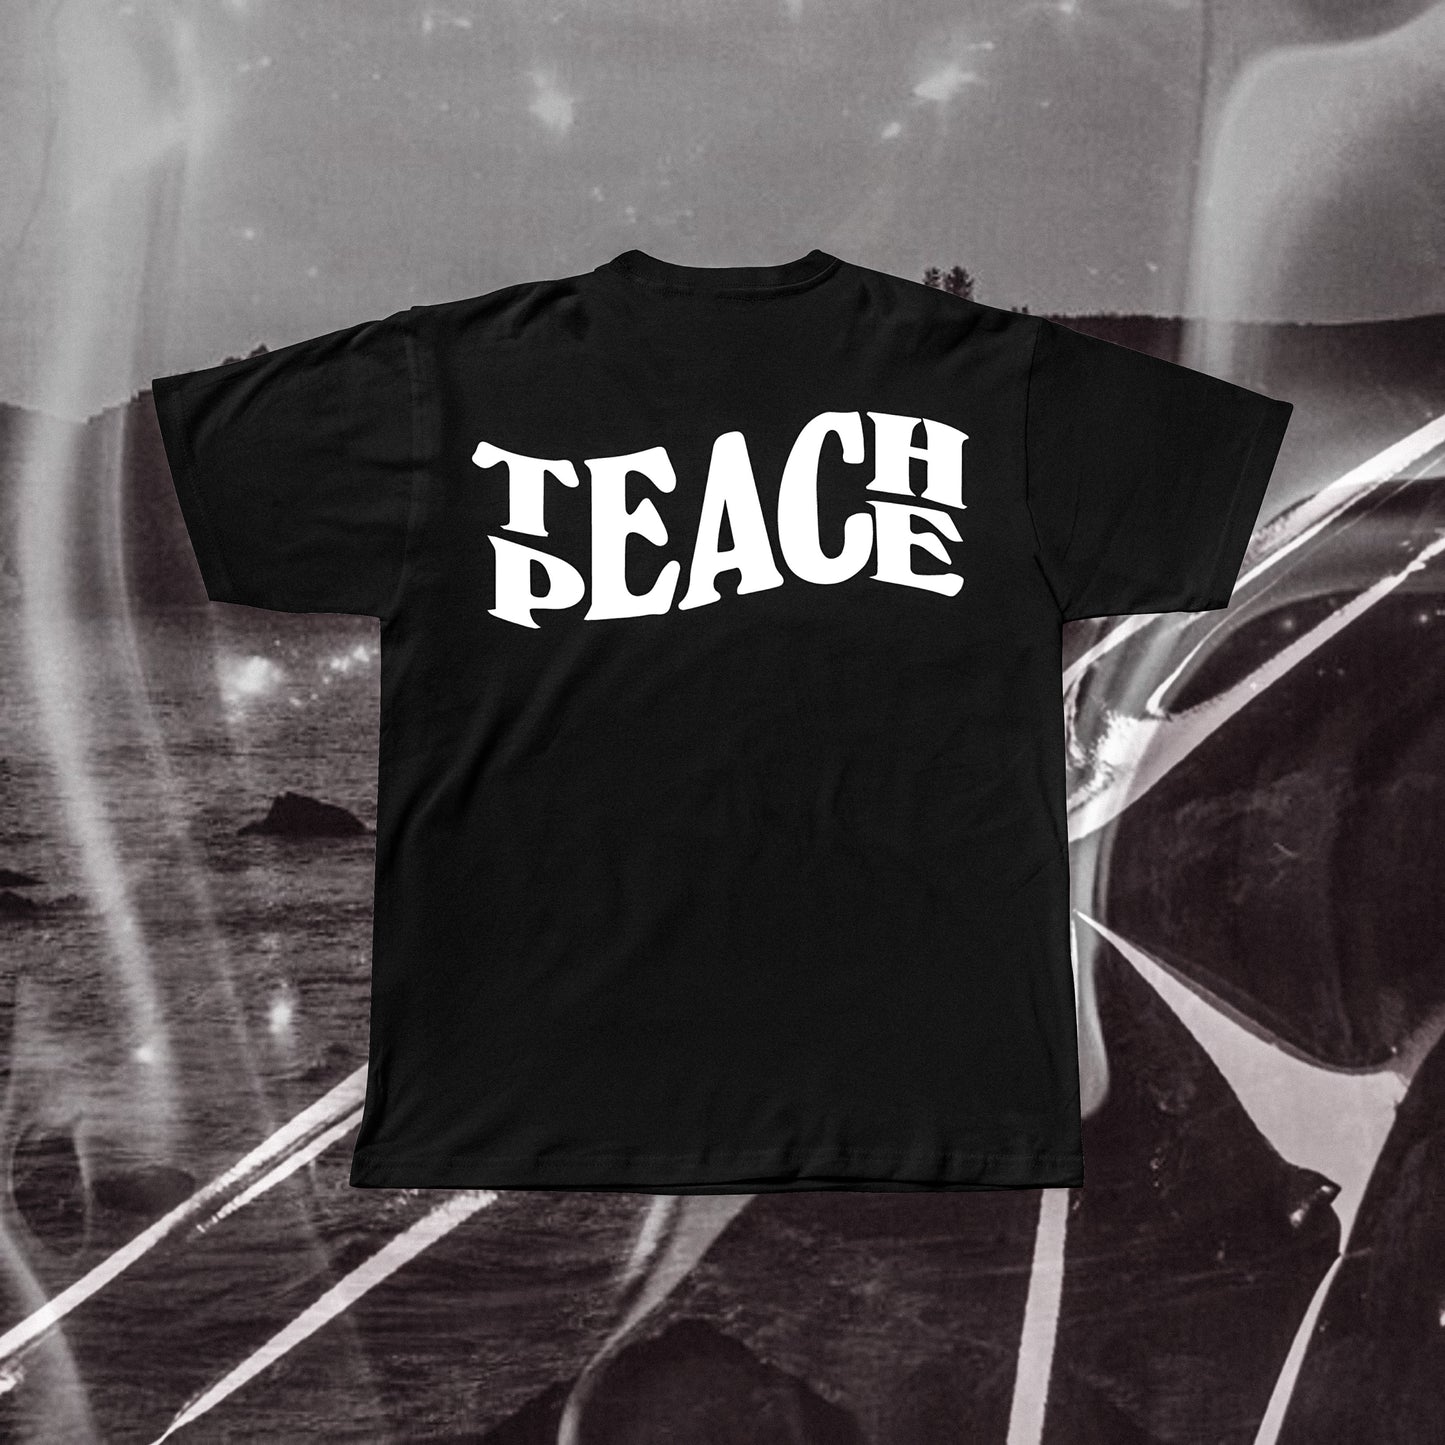 TEACH PEACE Regular T-shirt